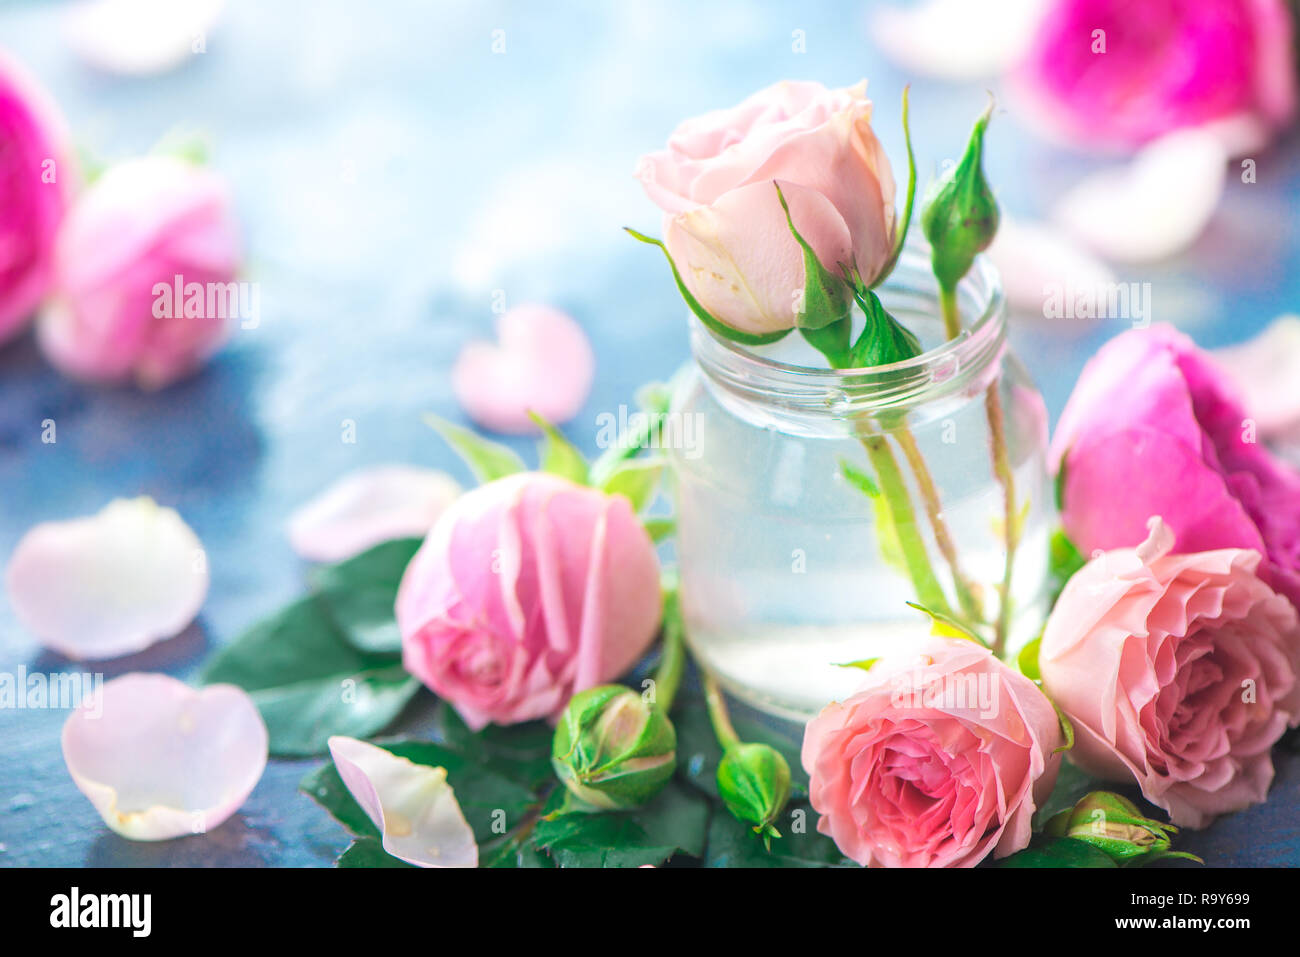 Glasflaschen mit rosa Pfingstrosen Rosen auf einen hellen Hintergrund mit kopieren. Femininer Kopf mit Blüten und Blumen in Pastelltönen Stockfoto